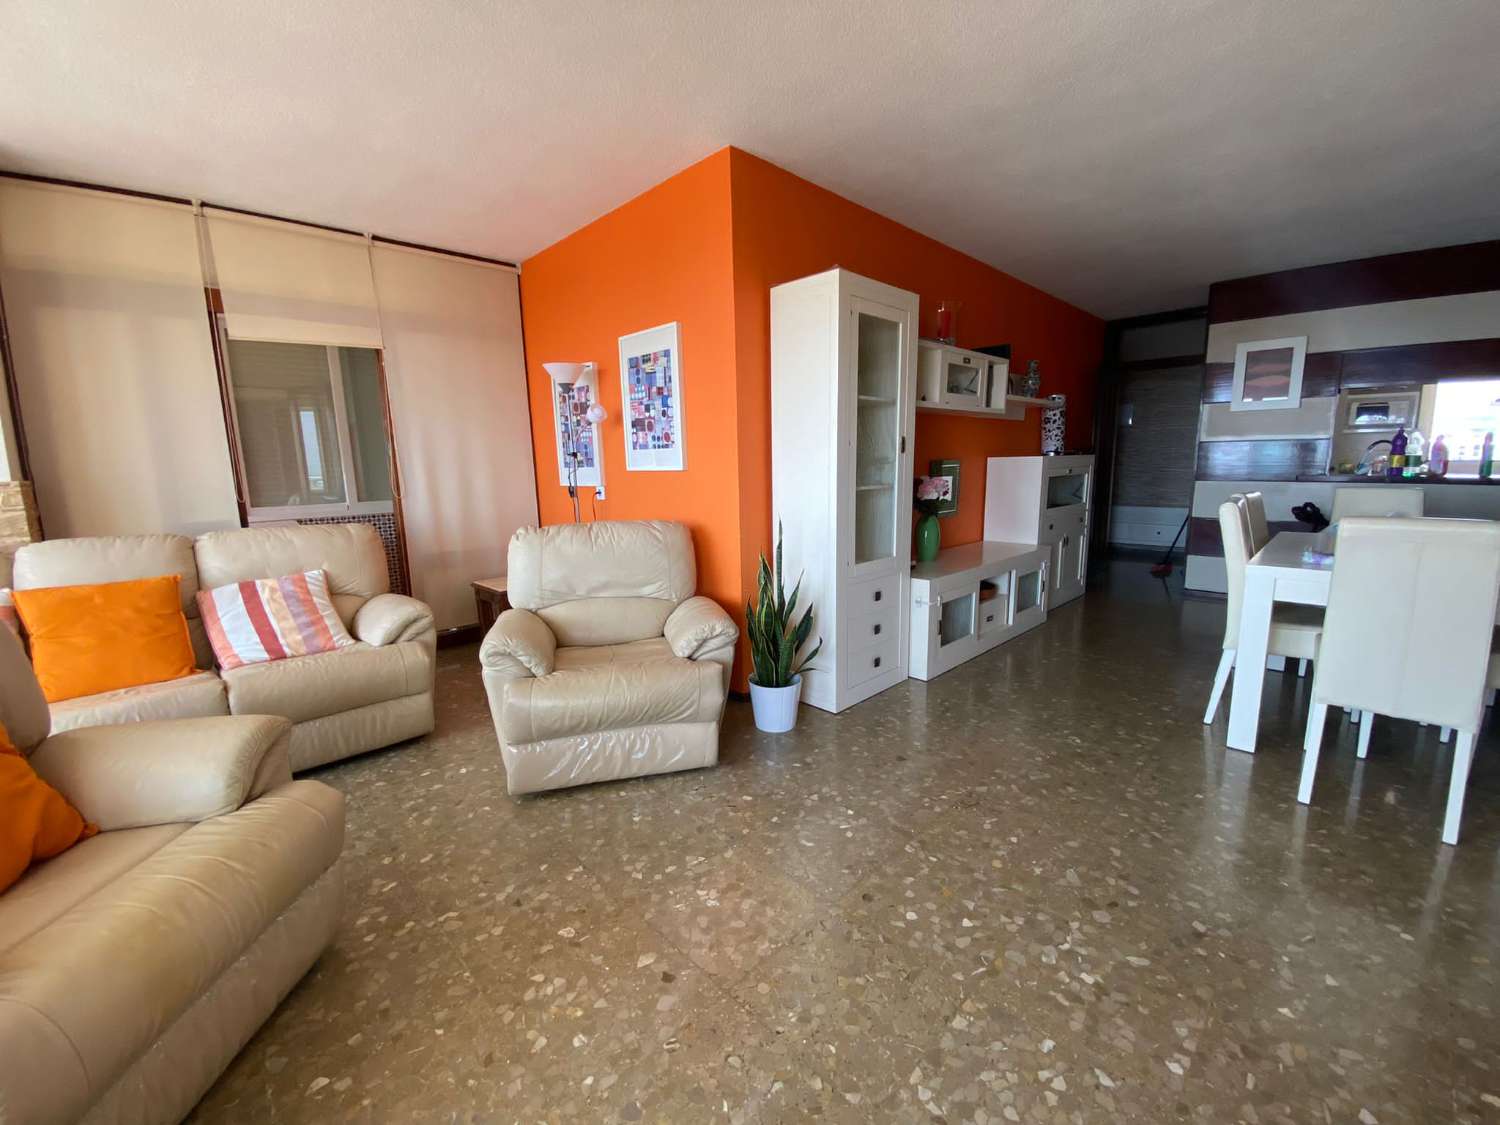 Te huur van 01/09/23 tot 30/06/24 prachtig appartement in Playamar met uitzicht op zee (Torremolinos)